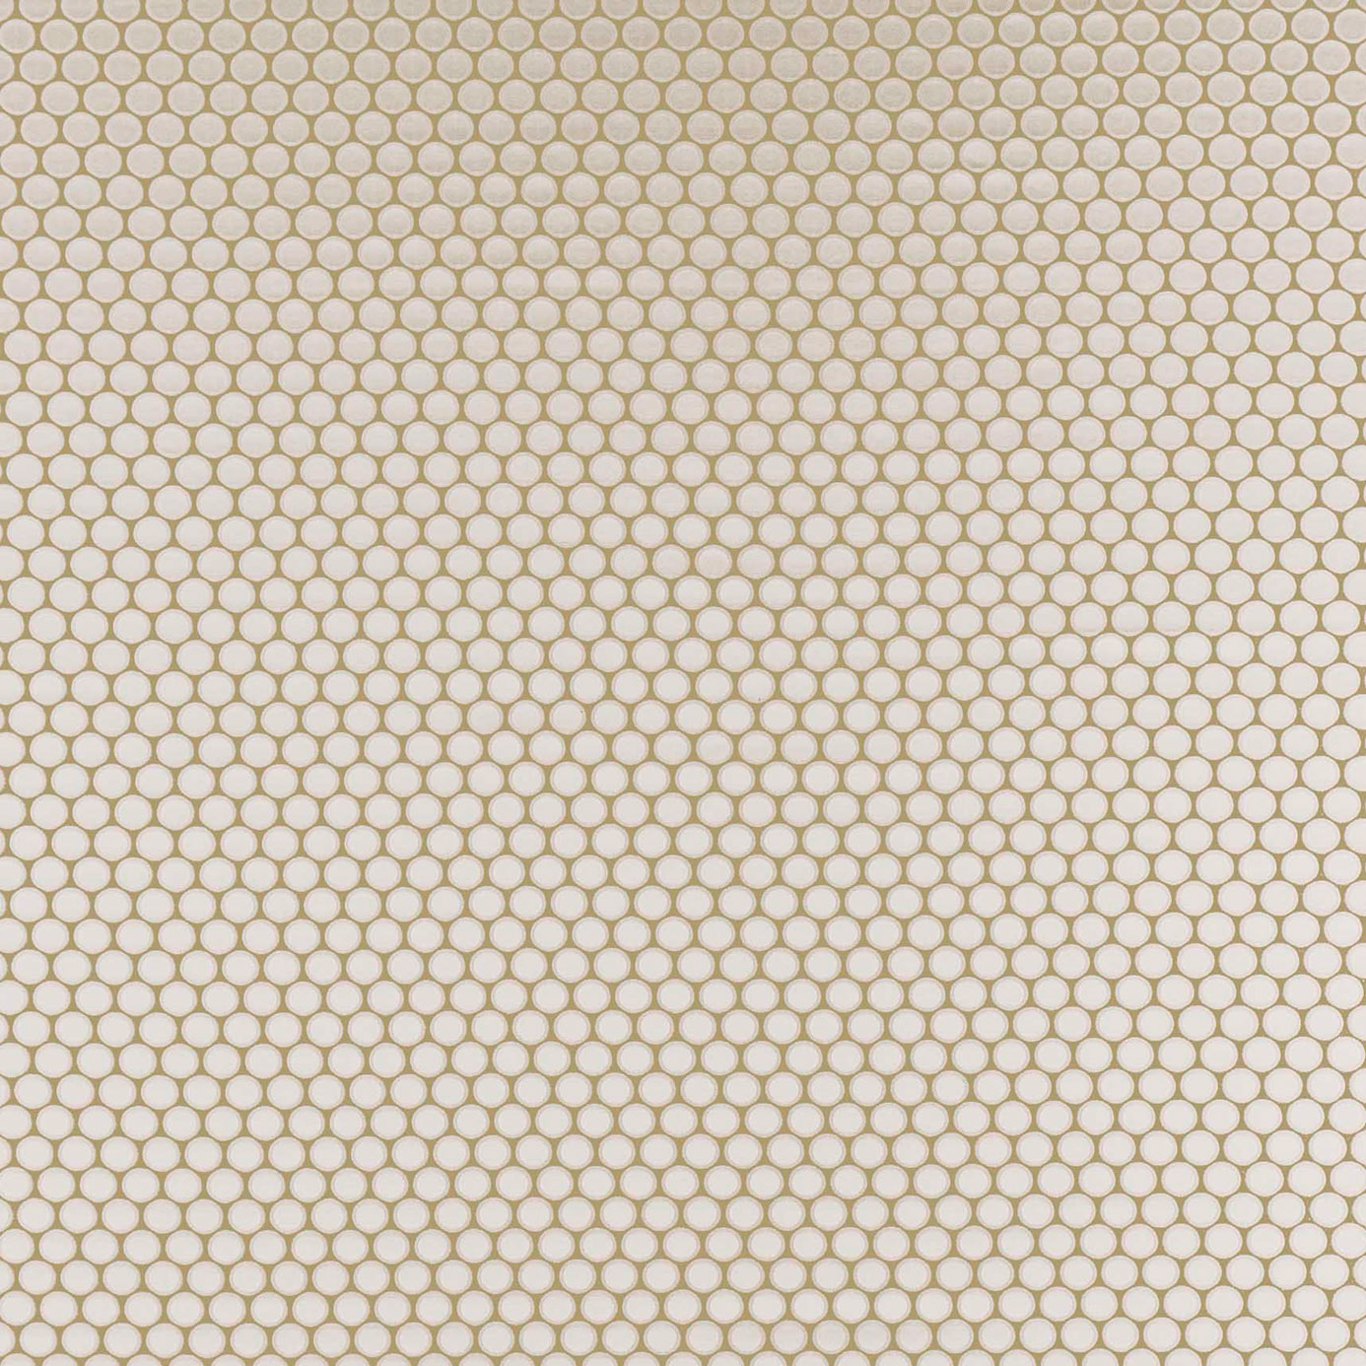 Duomo Fabric by Clarke & Clarke - F0867/04 - Ivory